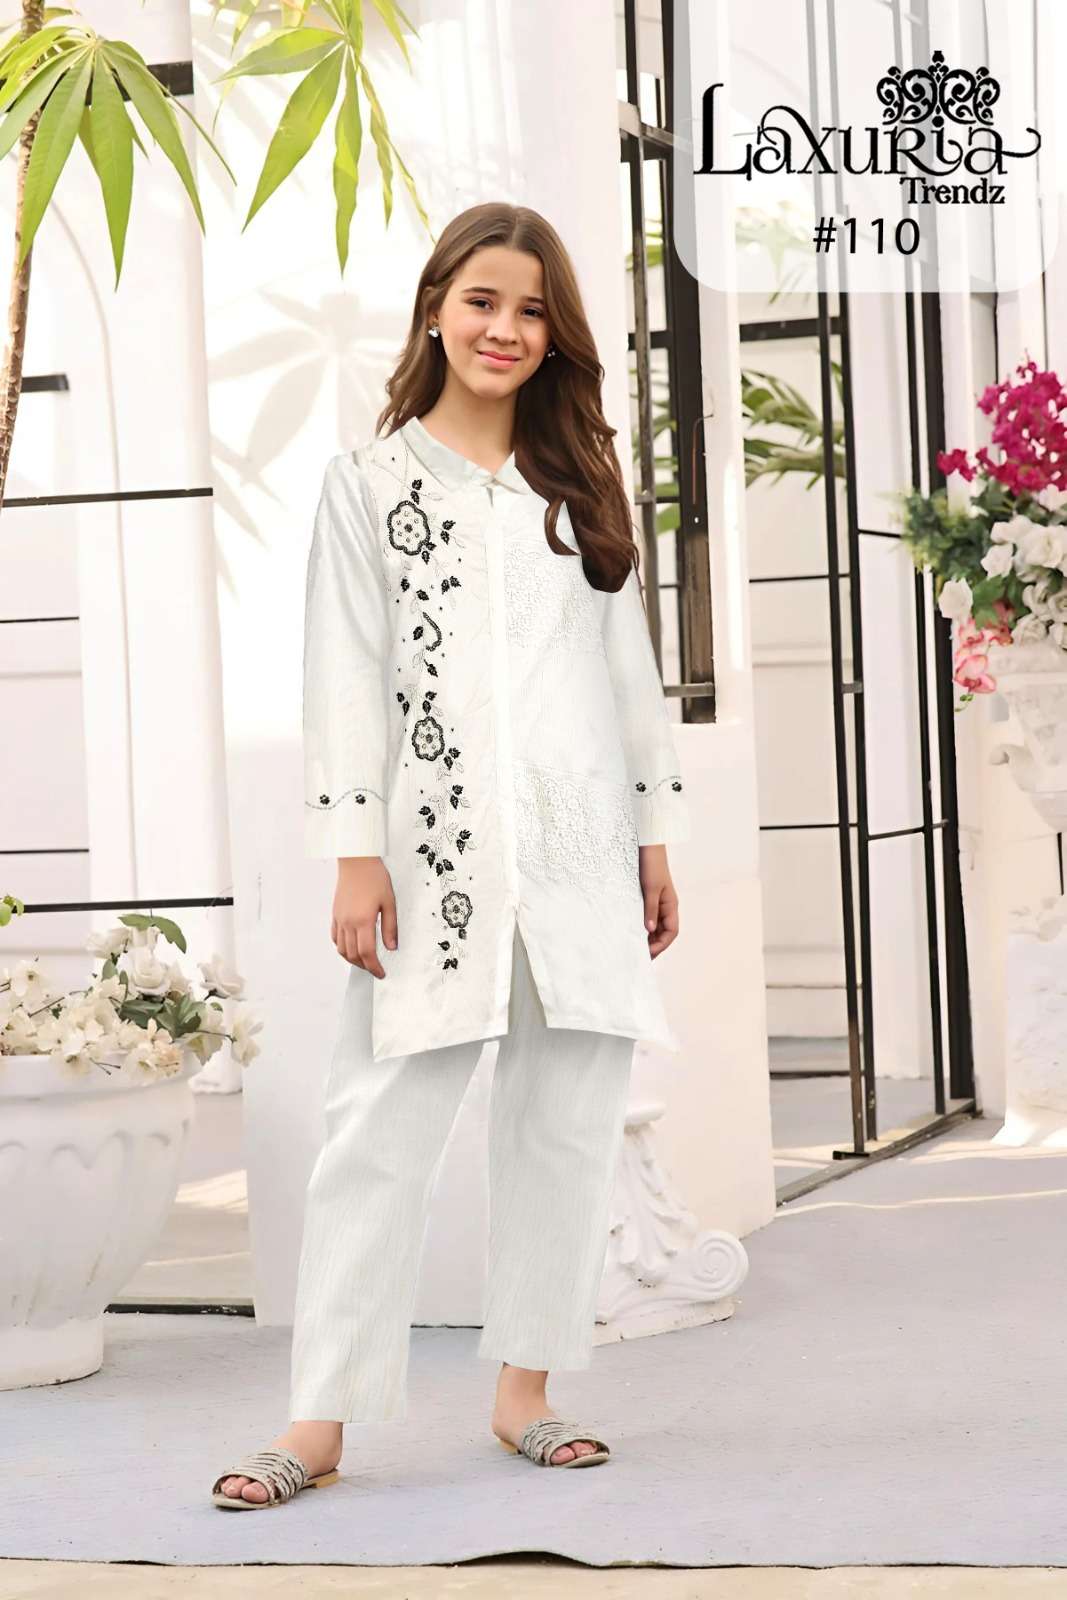 Laxuria Trendz LT-110 designer BSY Fabric suit